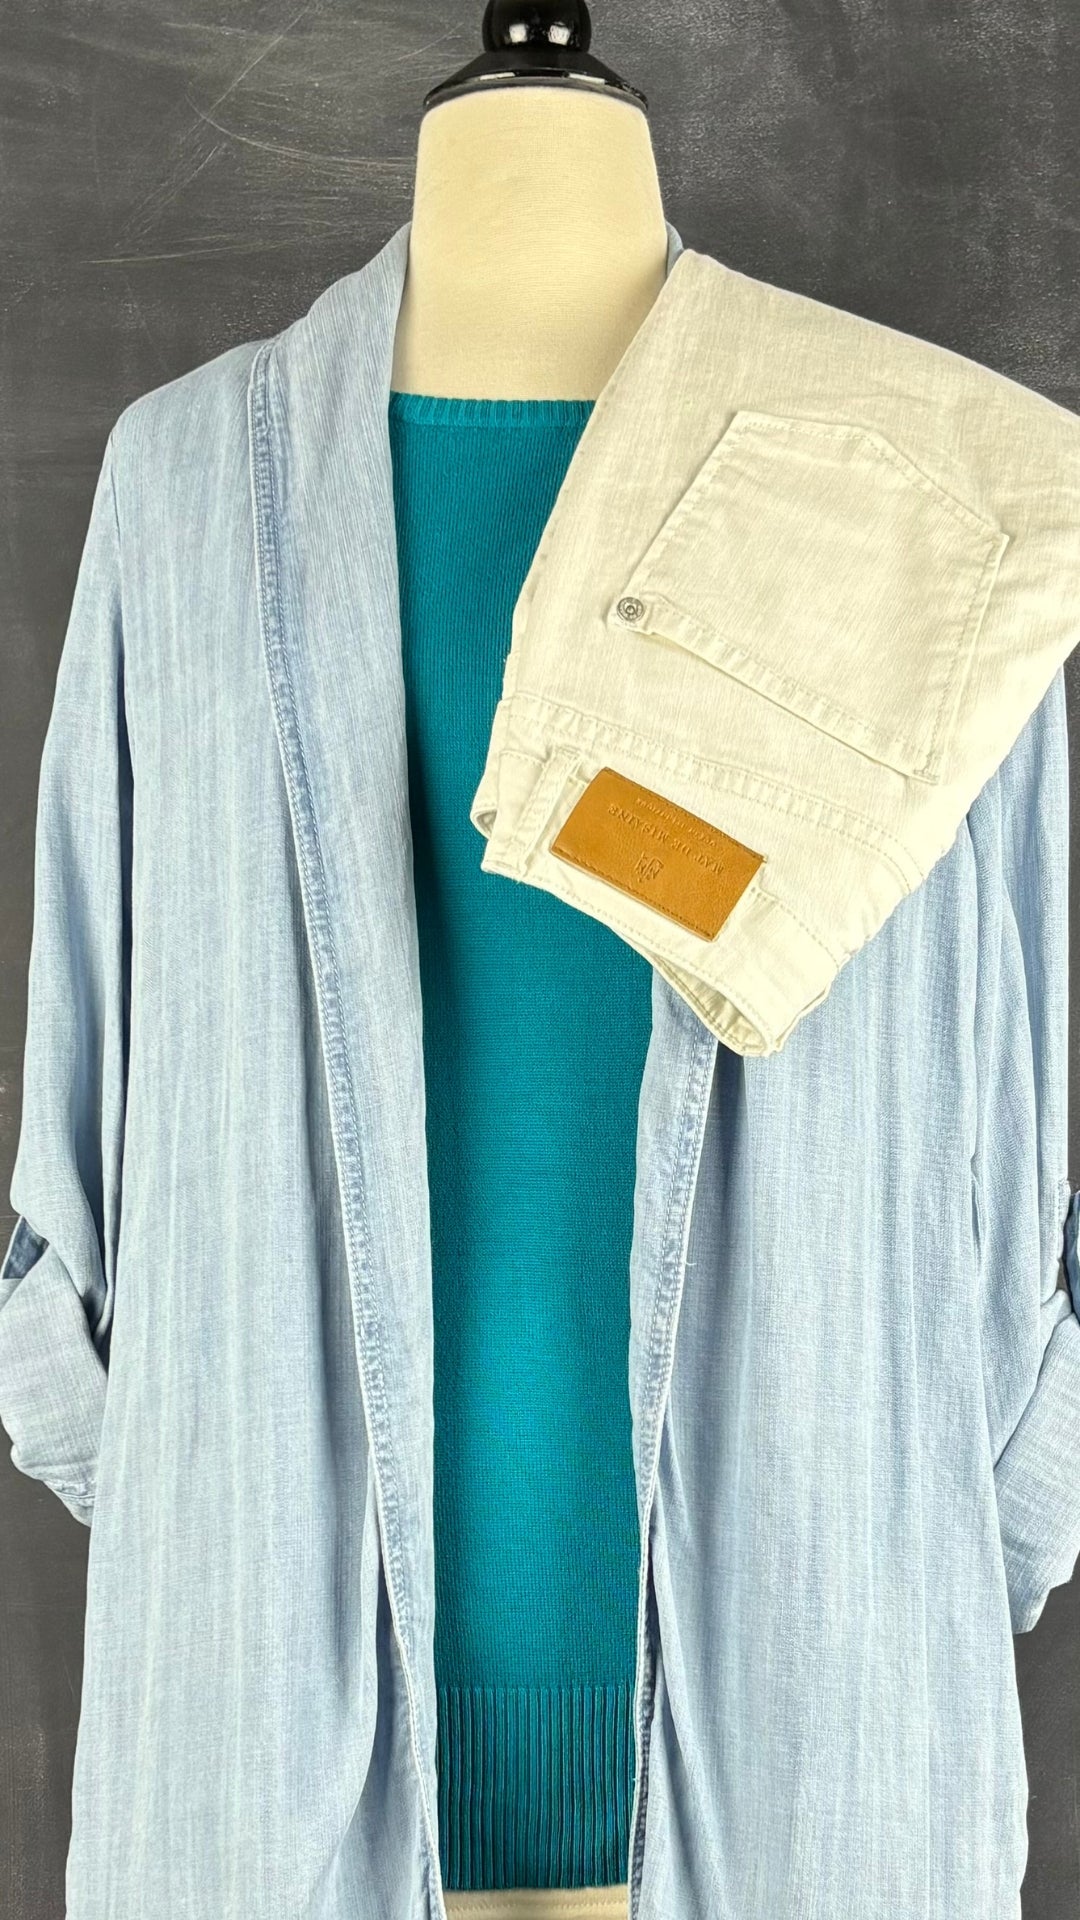 Chandail en fin tricot de coton egyptien Ca va de soi, taille estimée xs. Vue de l'agencement avec la veste peignoir et le pantalon crème.